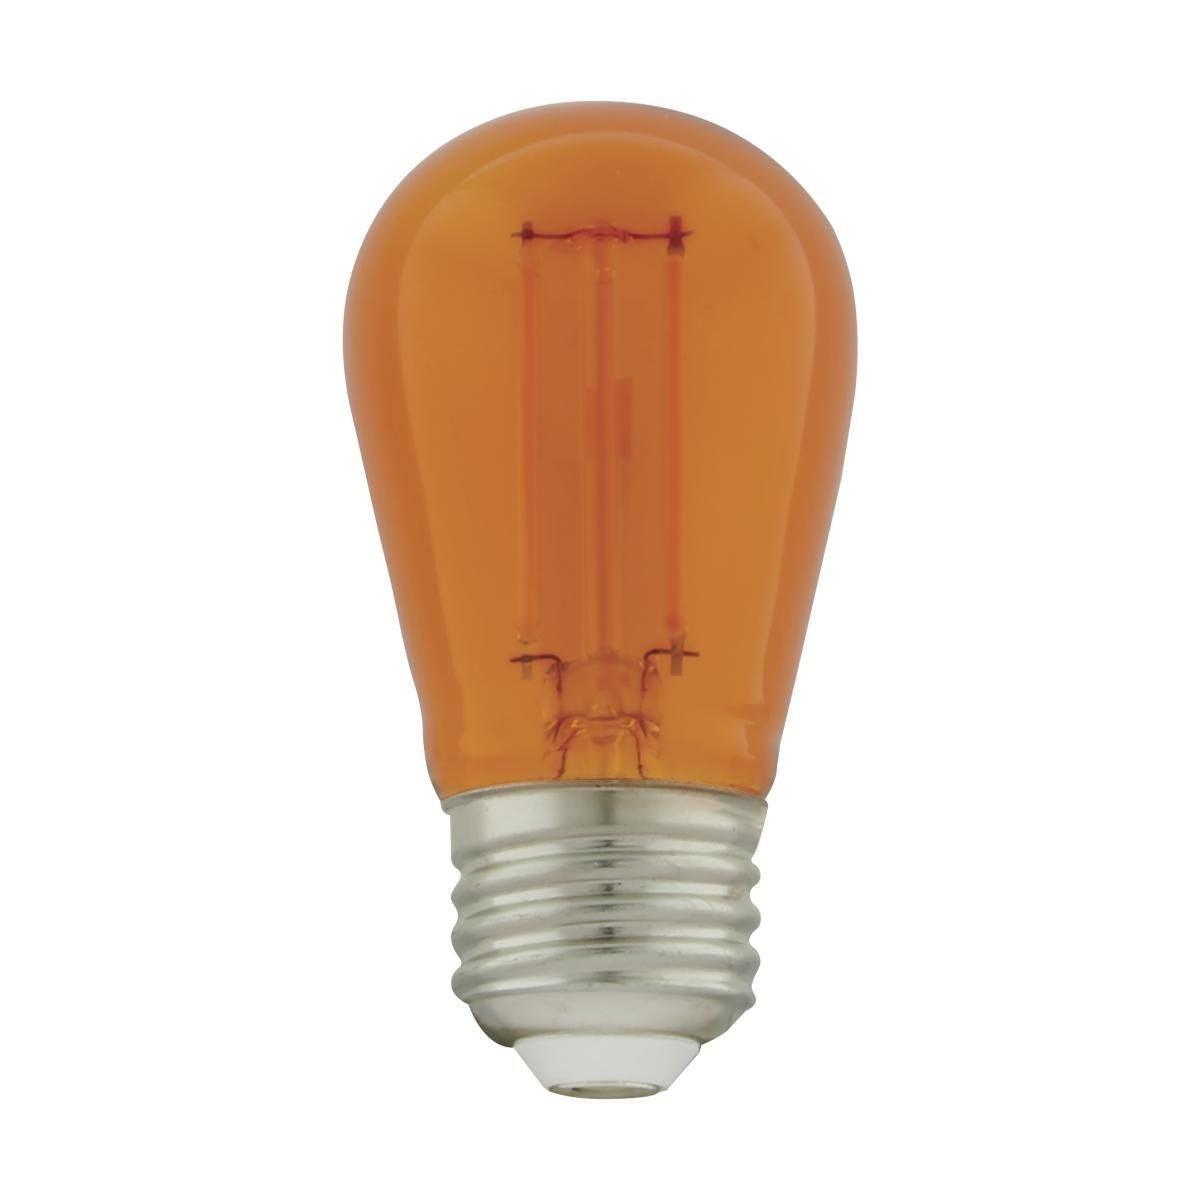 LED S14 Straight Tapered Bulb, 1 Watt, 90 Lumens, Orange, E26 Medium Base, Clear Finish, Pack Of 4 - Bees Lighting